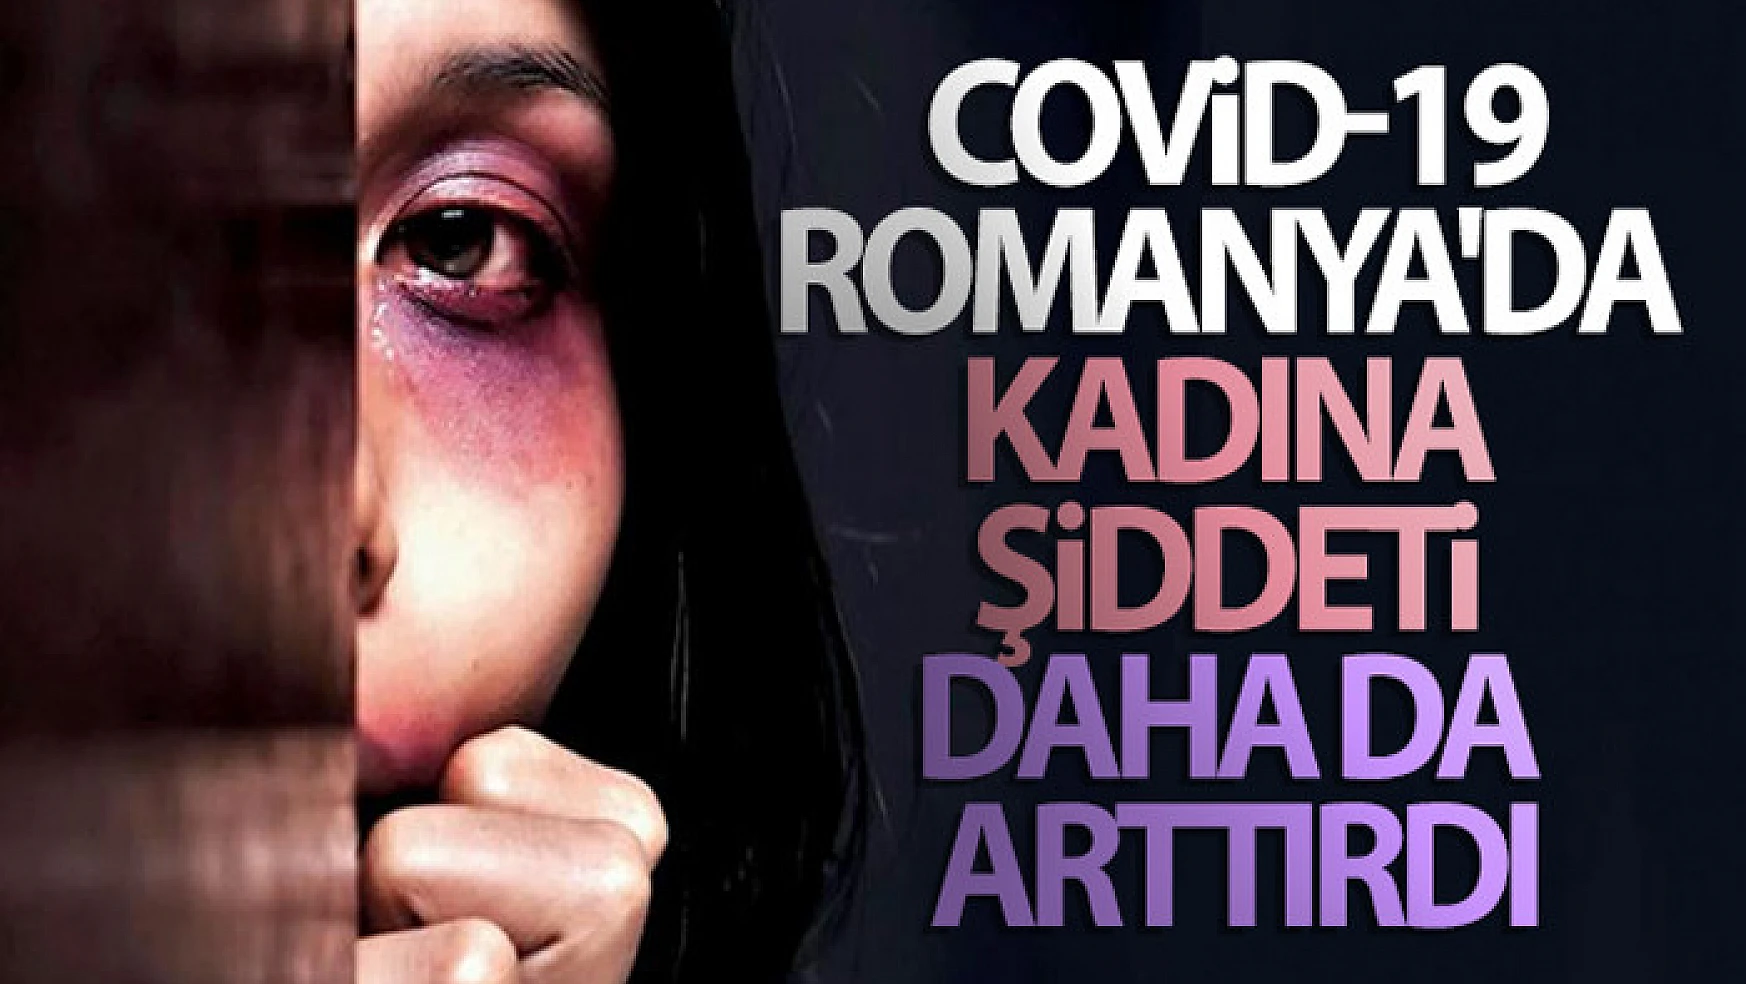 Covid-19, Romanya'da kadına şiddeti daha da arttırdı